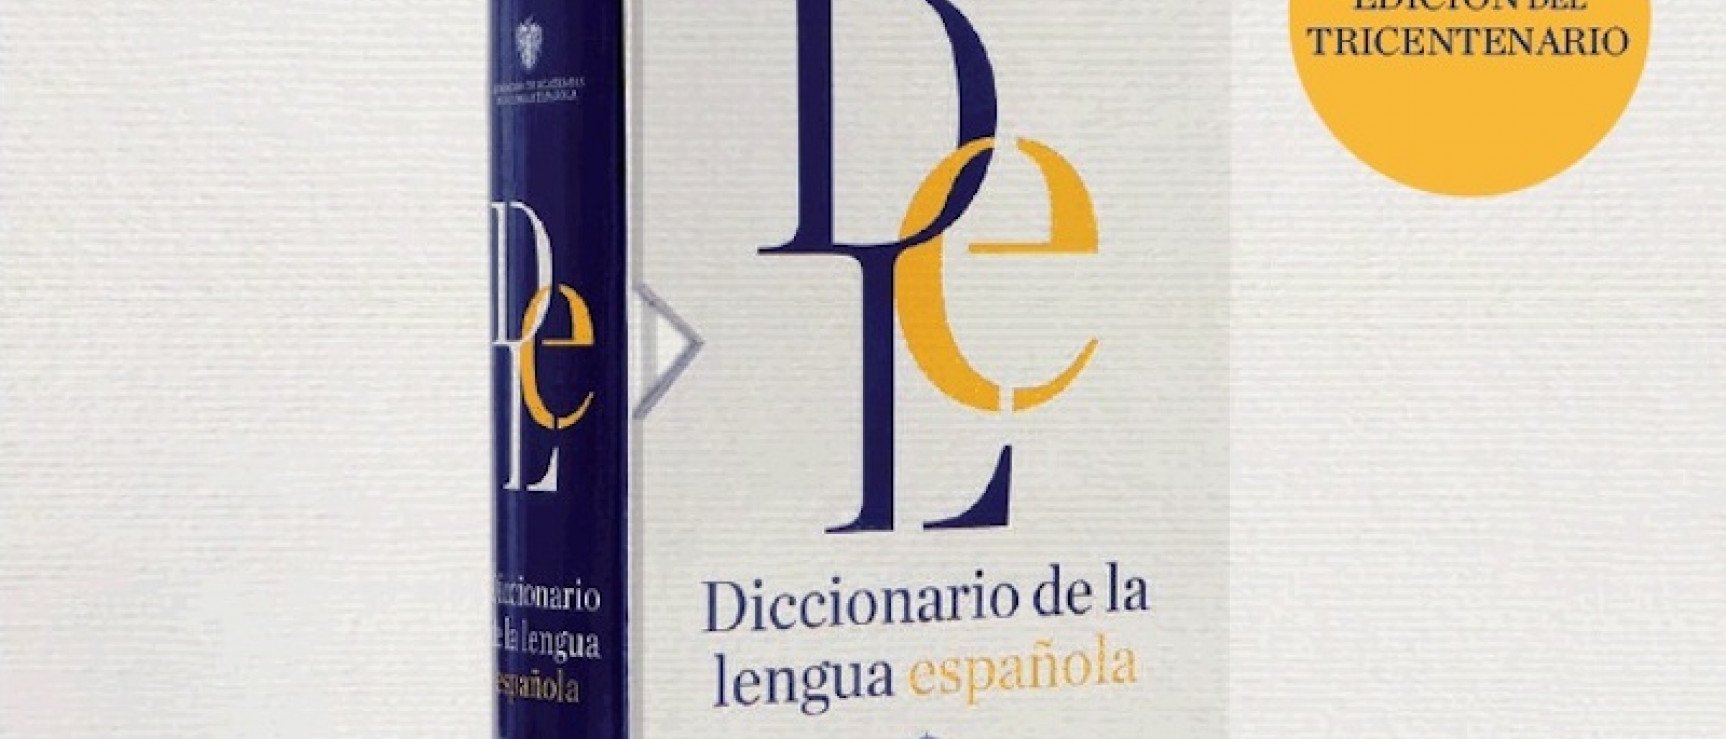 Imagen de la cubierta del nuevo «Diccionario de la lengua española».